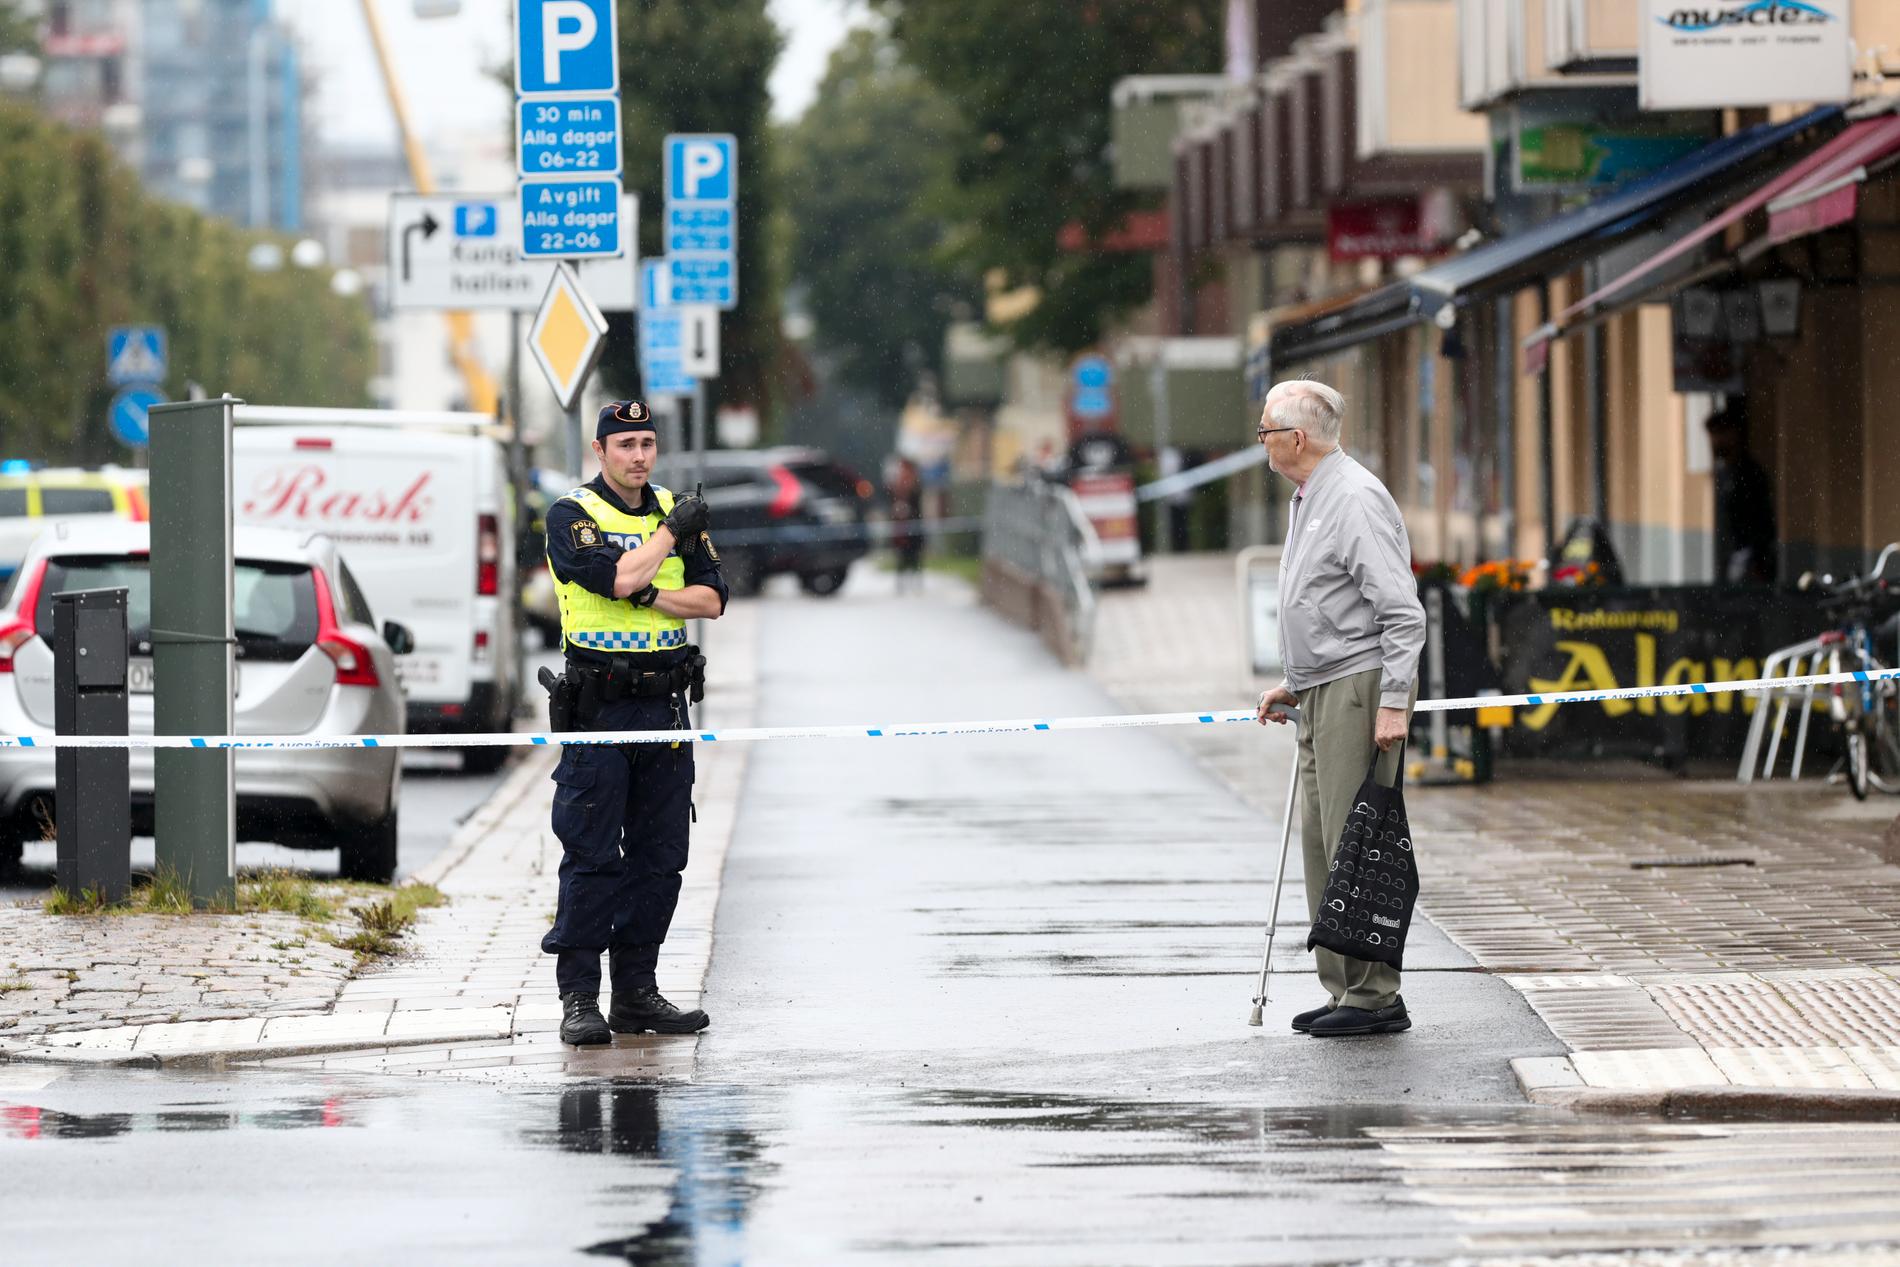 En gata i Linköping har spärrats av sedan ett misstänkt föremål hittats utomhus, uppger polisen.